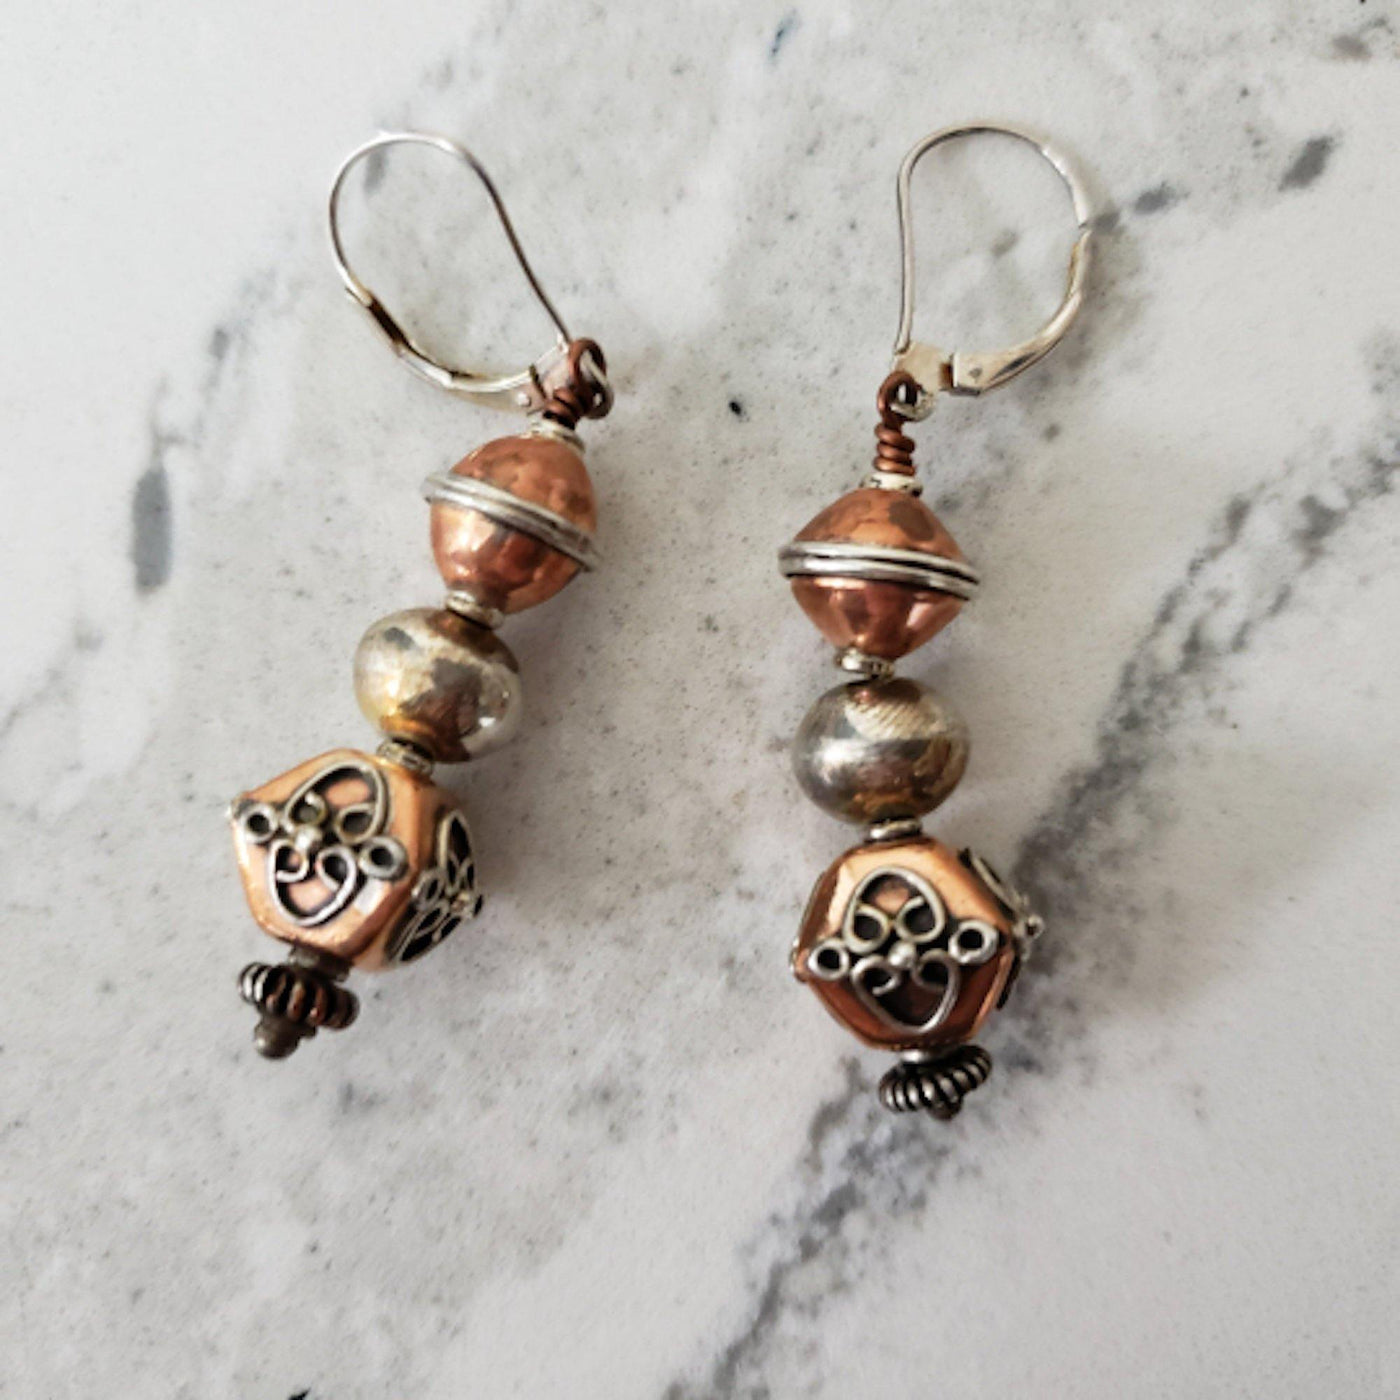 Eye catching copper bead earrings - LB Designs